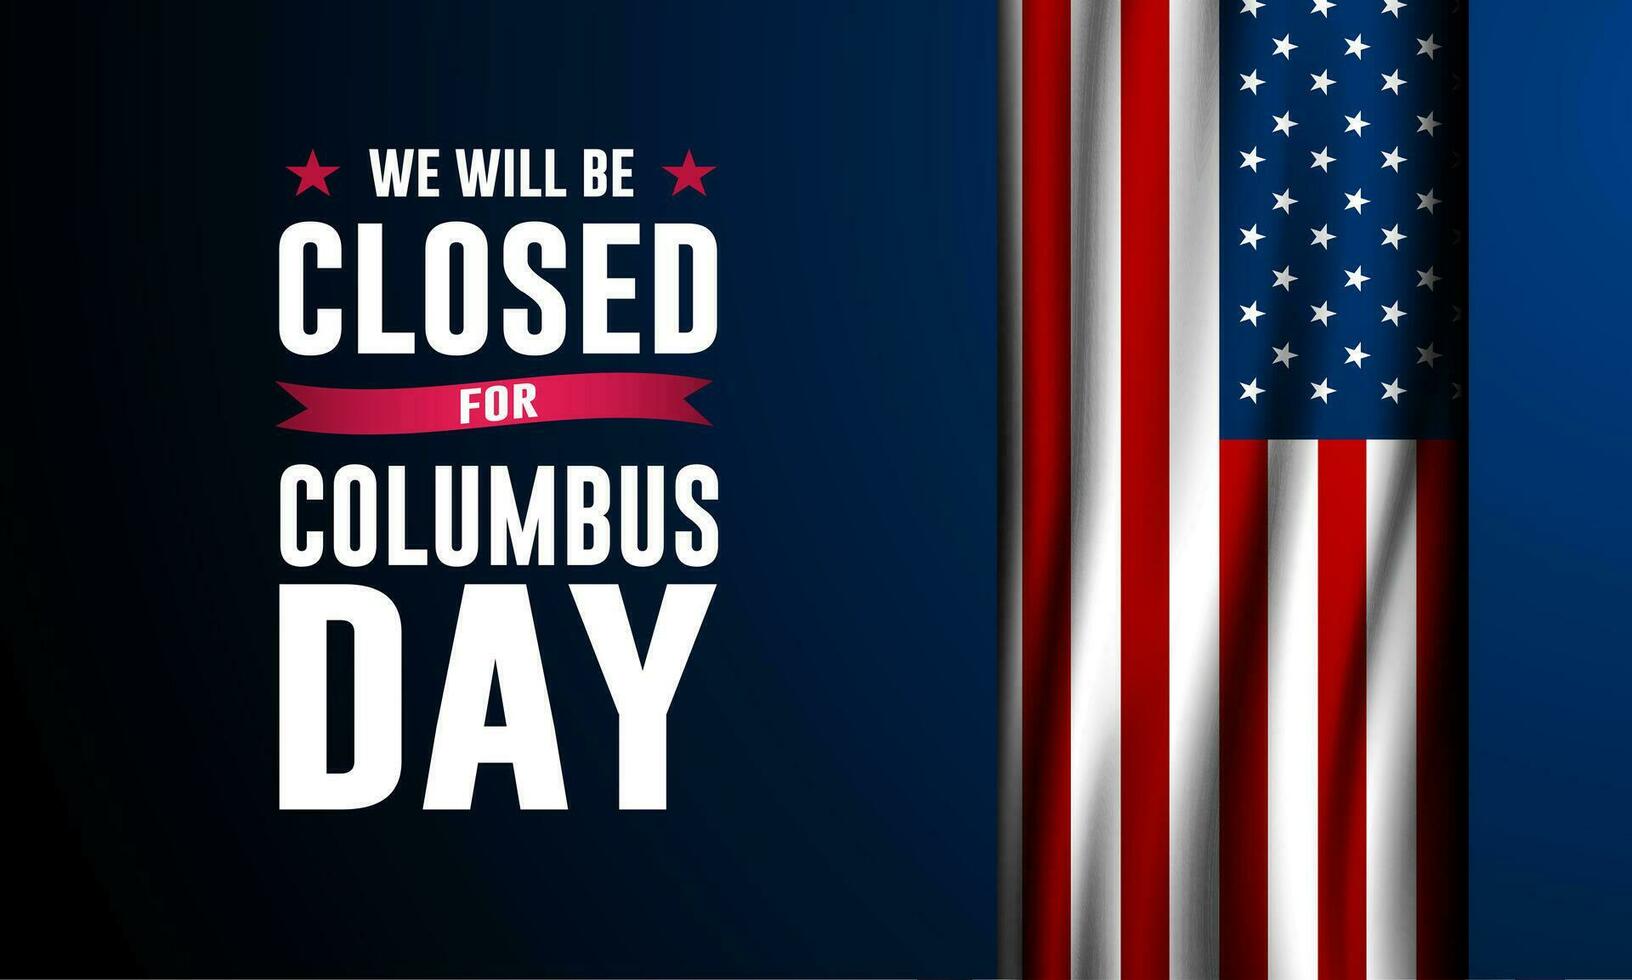 glücklich Kolumbus Tag mit wir werden Sein geschlossen Text Hintergrund Vektor Illustration